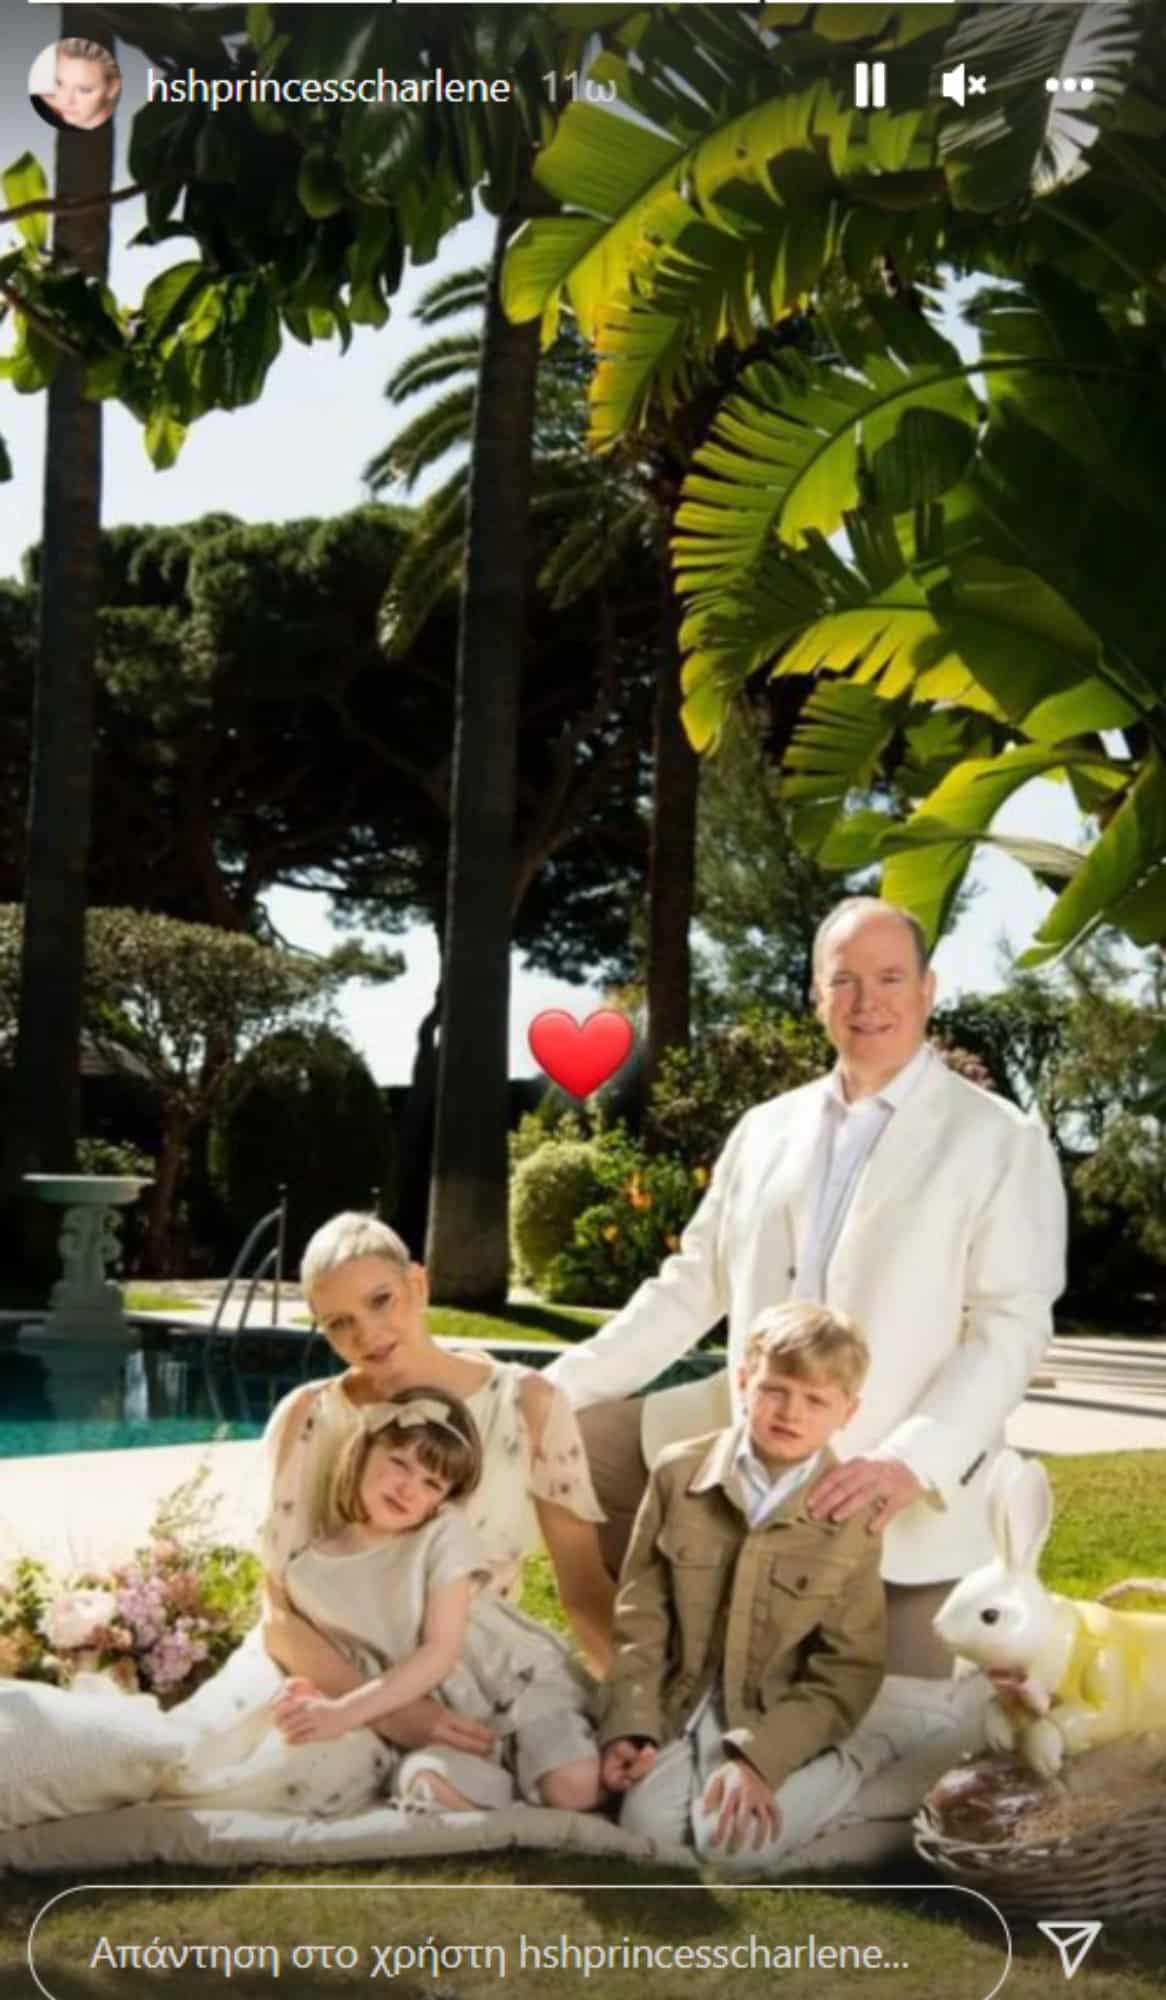 σαρλιν - Πάσχα στο Μονακό με την οικογένειά της έκανε η πριγκίπισσα Σαρλίν (εικόνες)